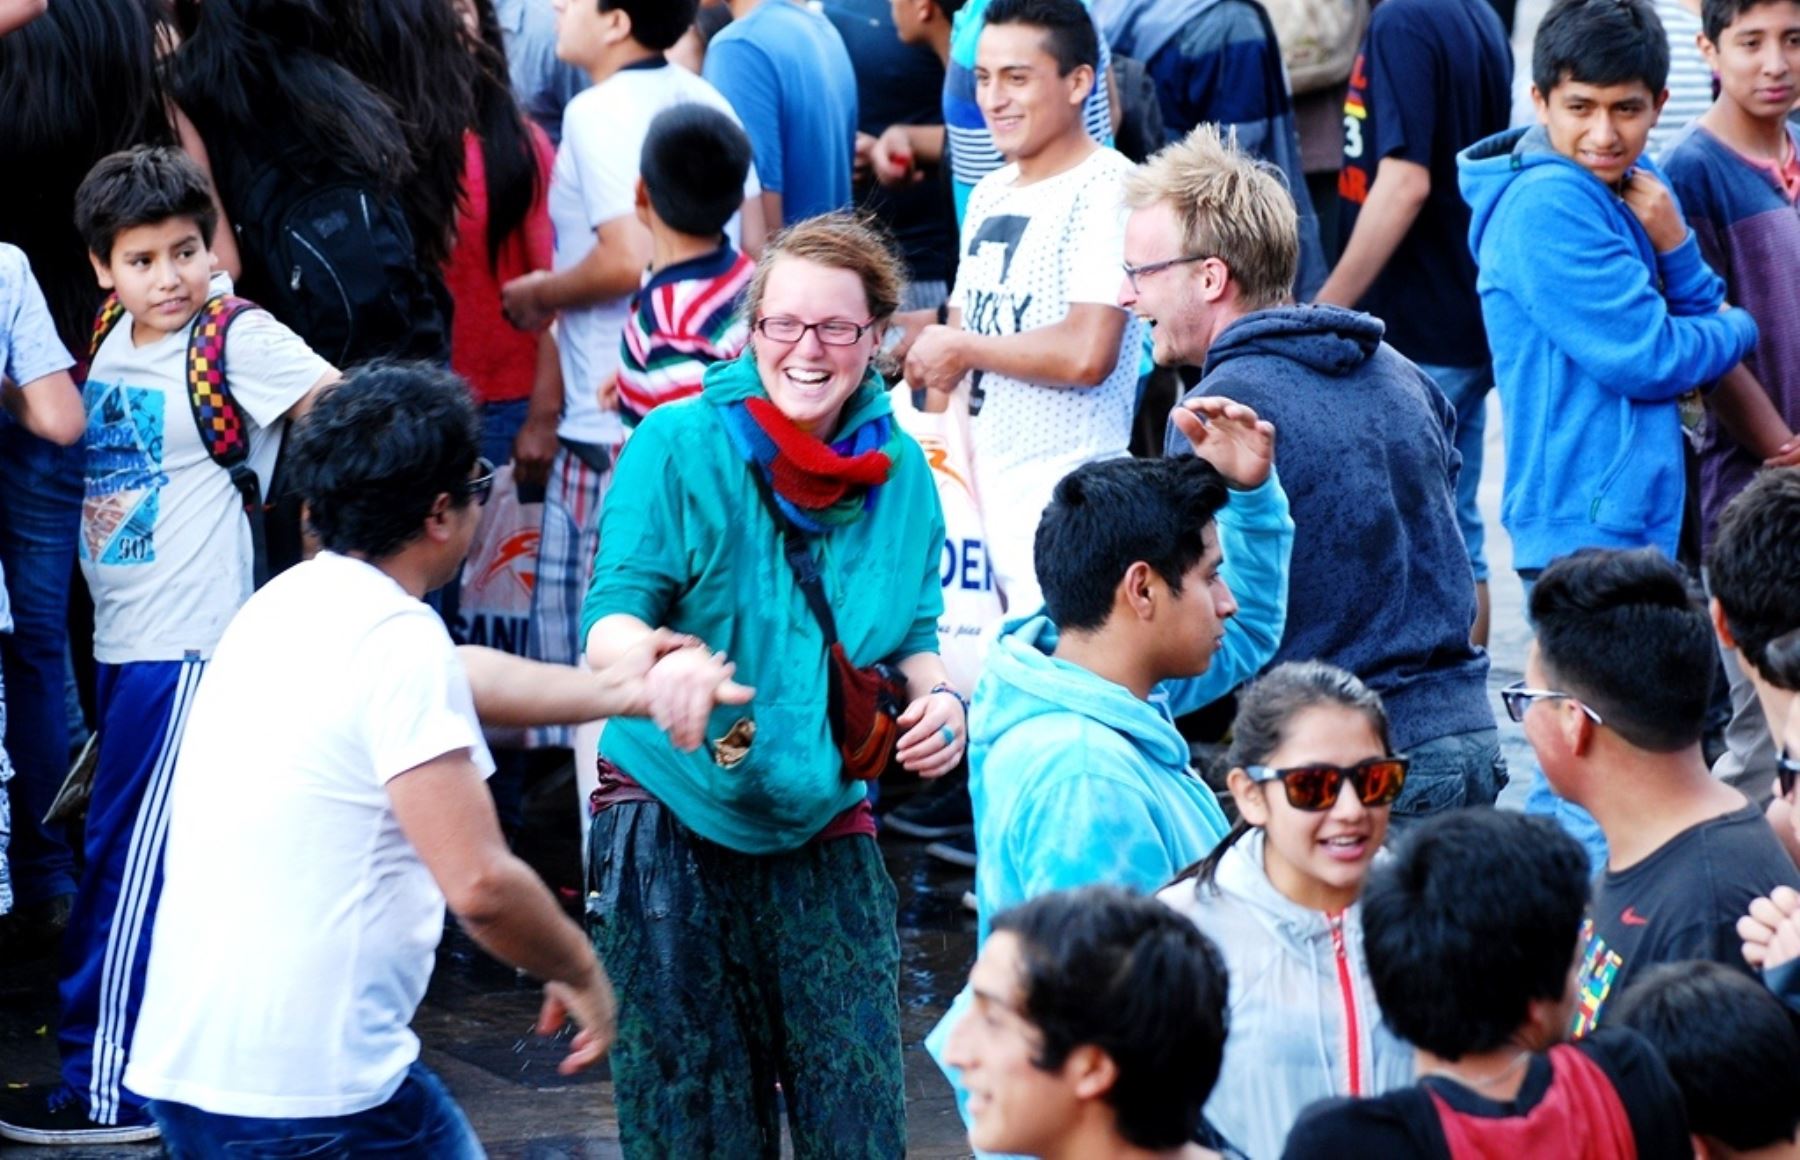 Cajamarca espera el arribo de miles de turistas para disfrutar del tradicional carnaval. ANDINA/Eduard Lozano